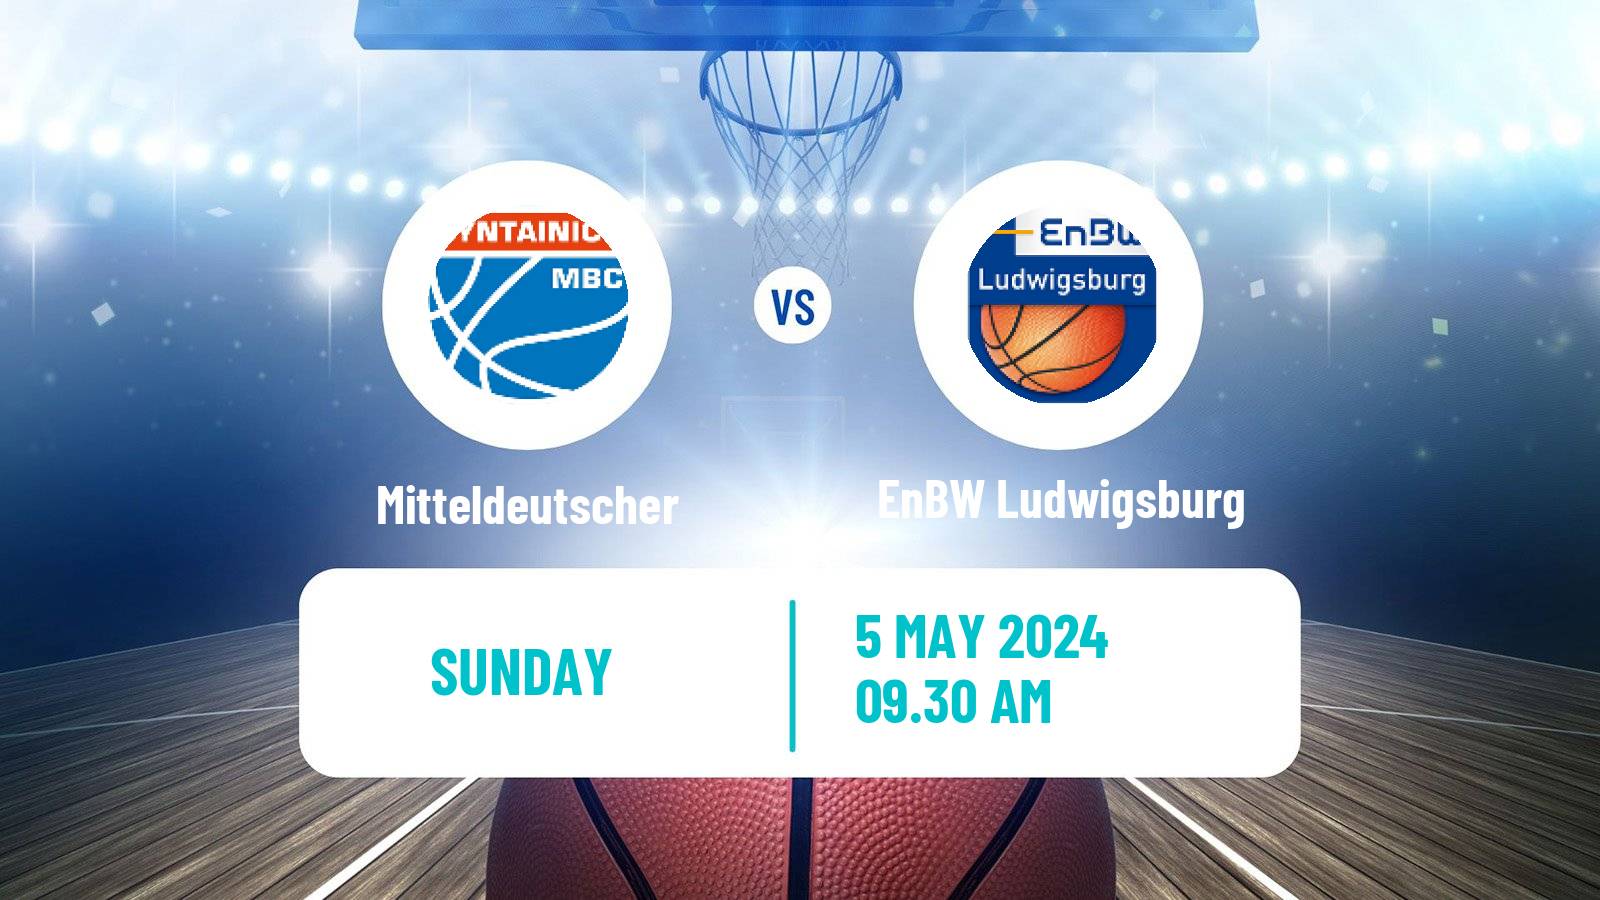 Basketball German BBL Mitteldeutscher - EnBW Ludwigsburg